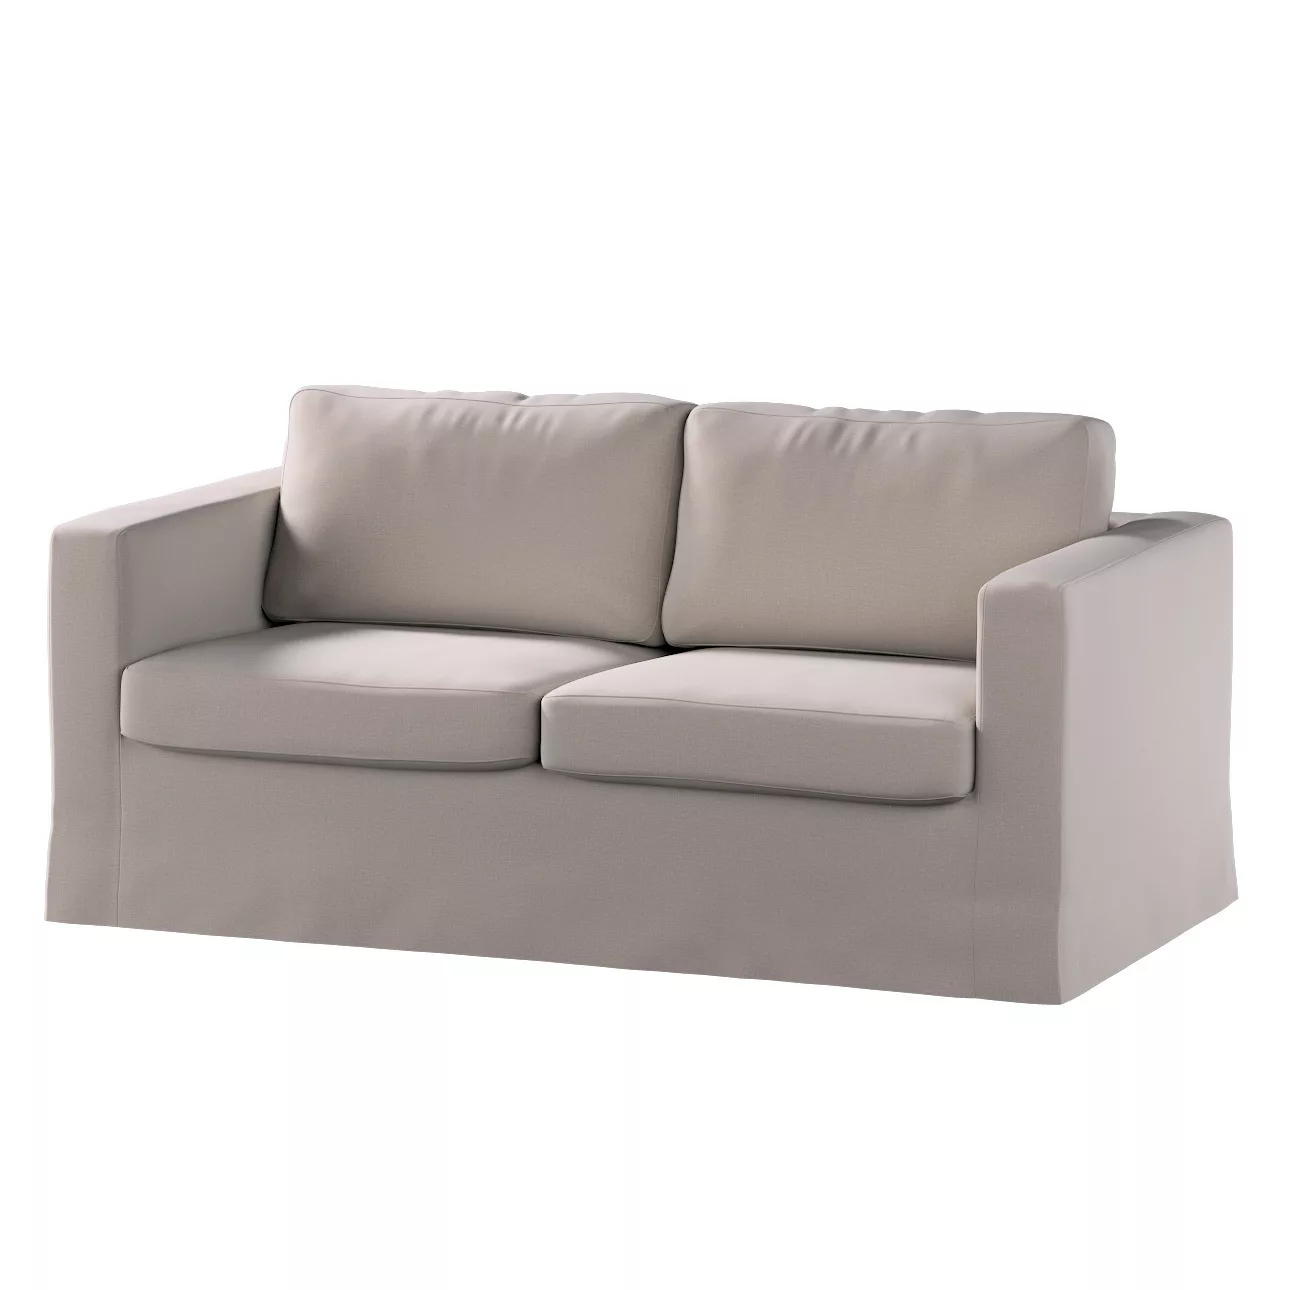 Bezug für Karlstad 2-Sitzer Sofa nicht ausklappbar, lang, beige, Sofahusse, günstig online kaufen